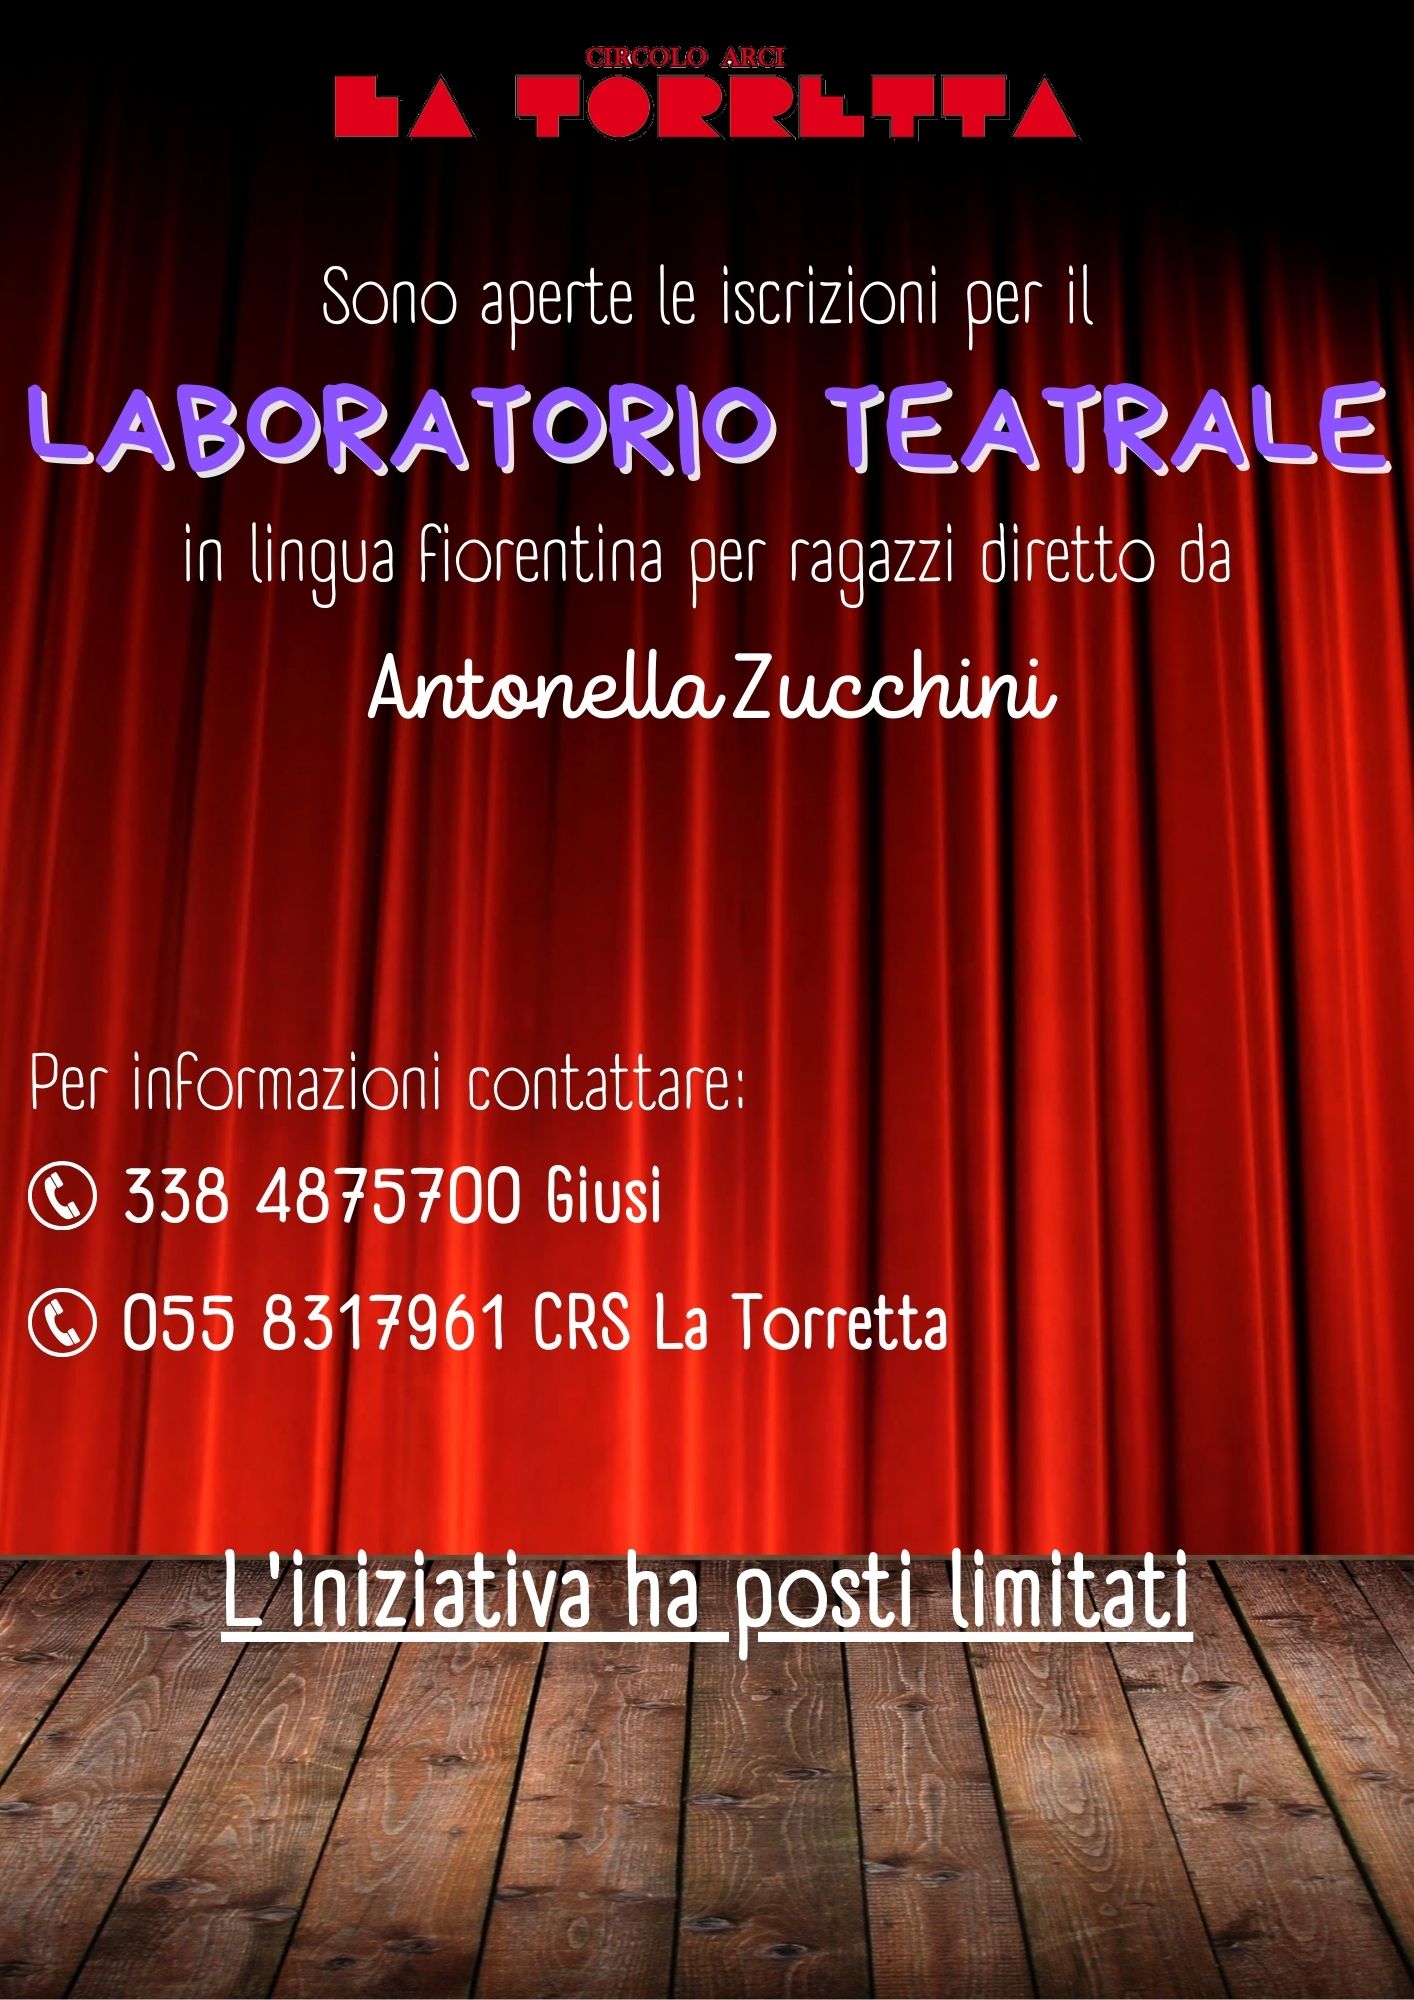 laboratorio teatrale Antonella zucchini